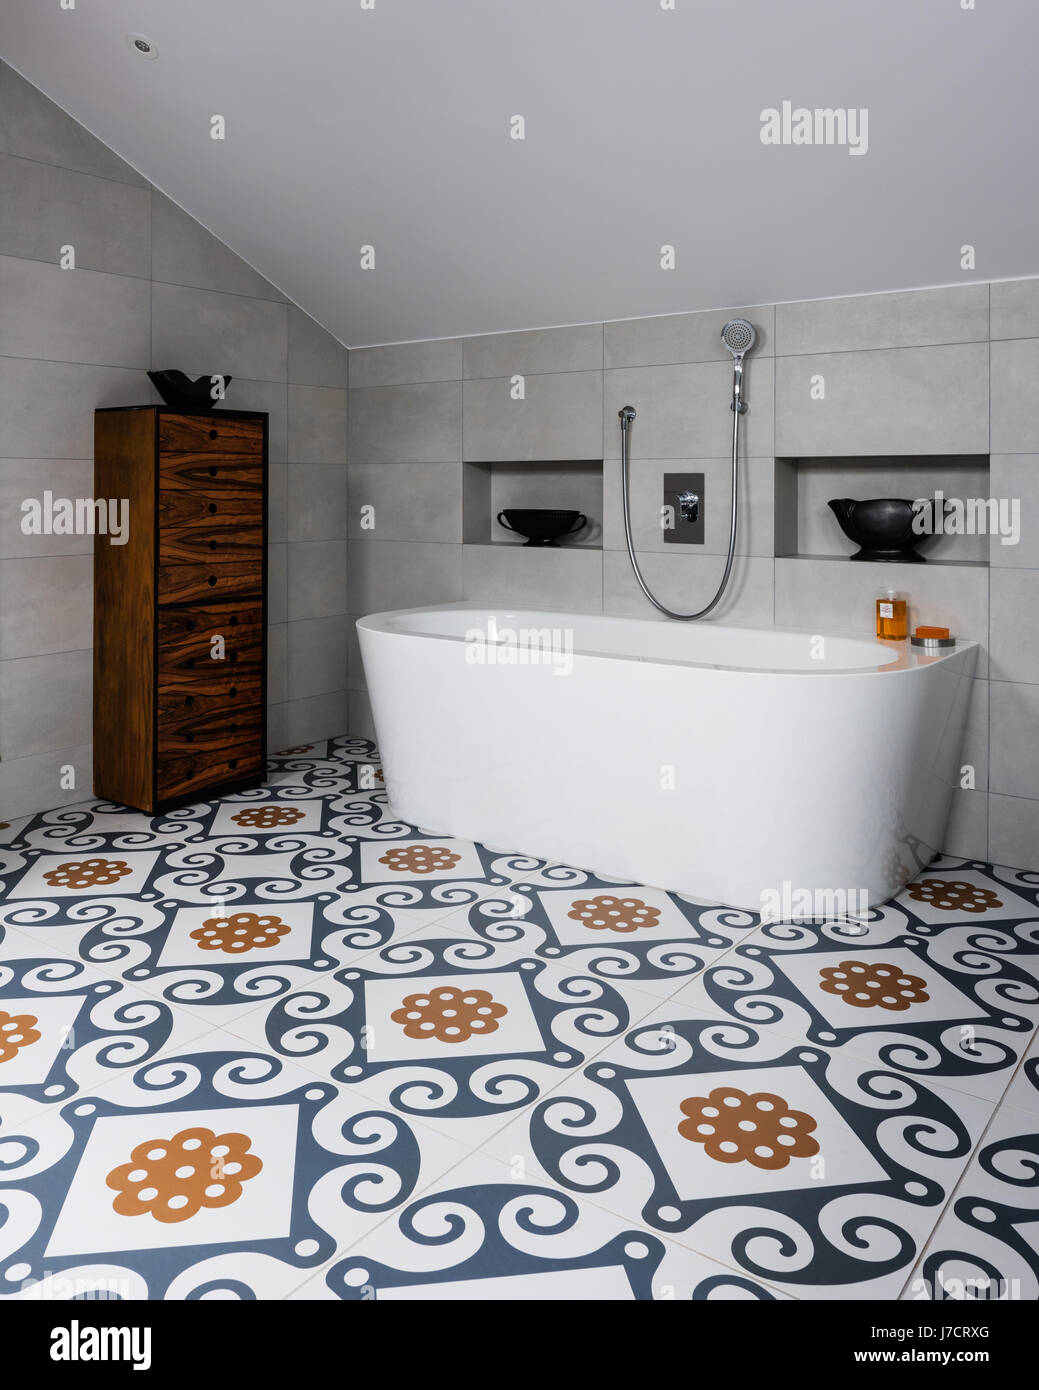 Cajones de madera un baño moderno y espectacular, mayólicas, azulejos del  piso Fotografía de stock - Alamy